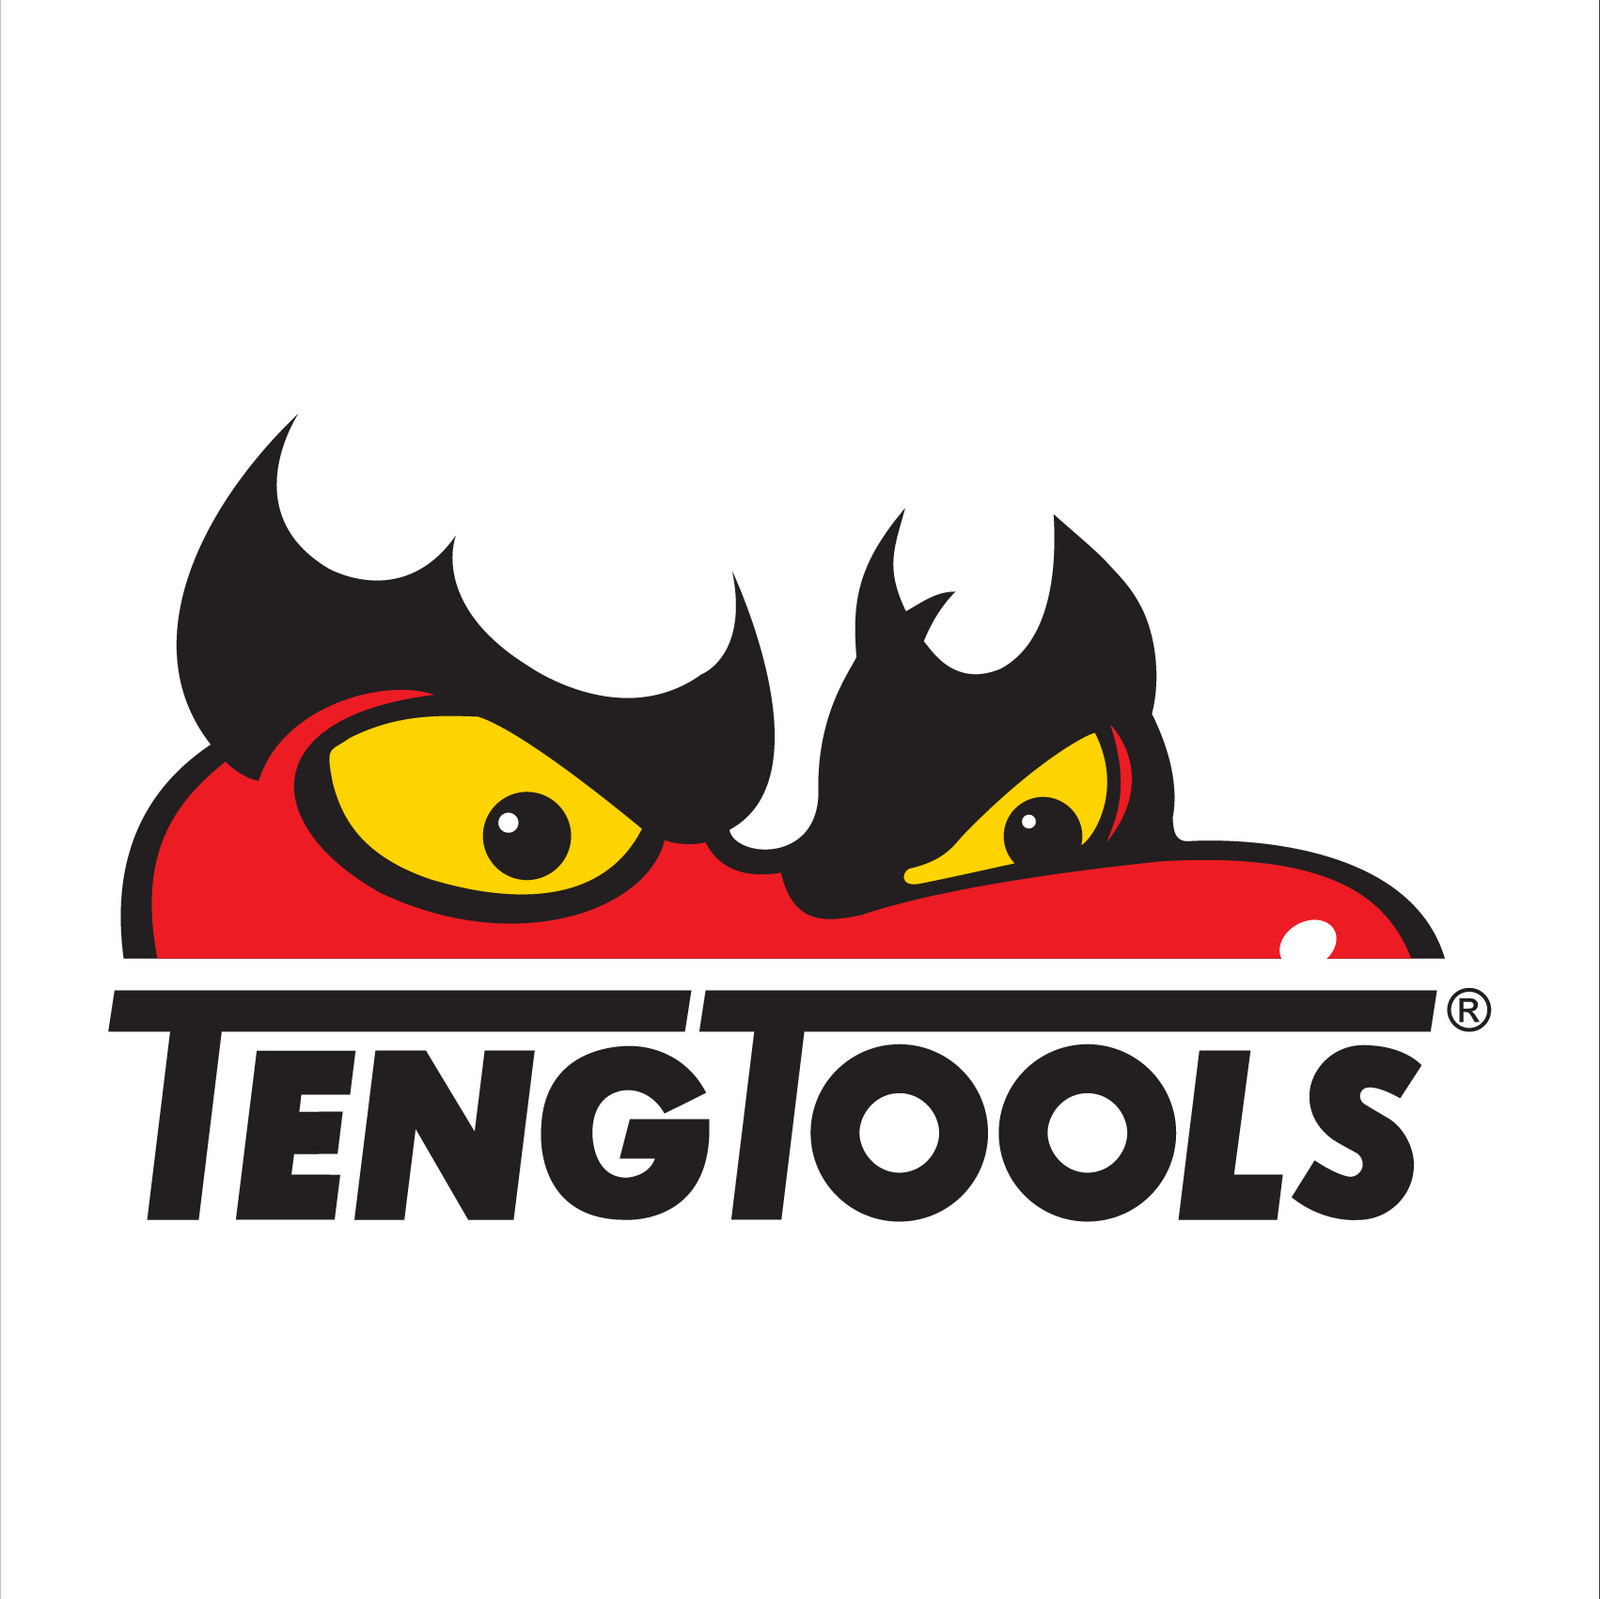 Teng-Tools